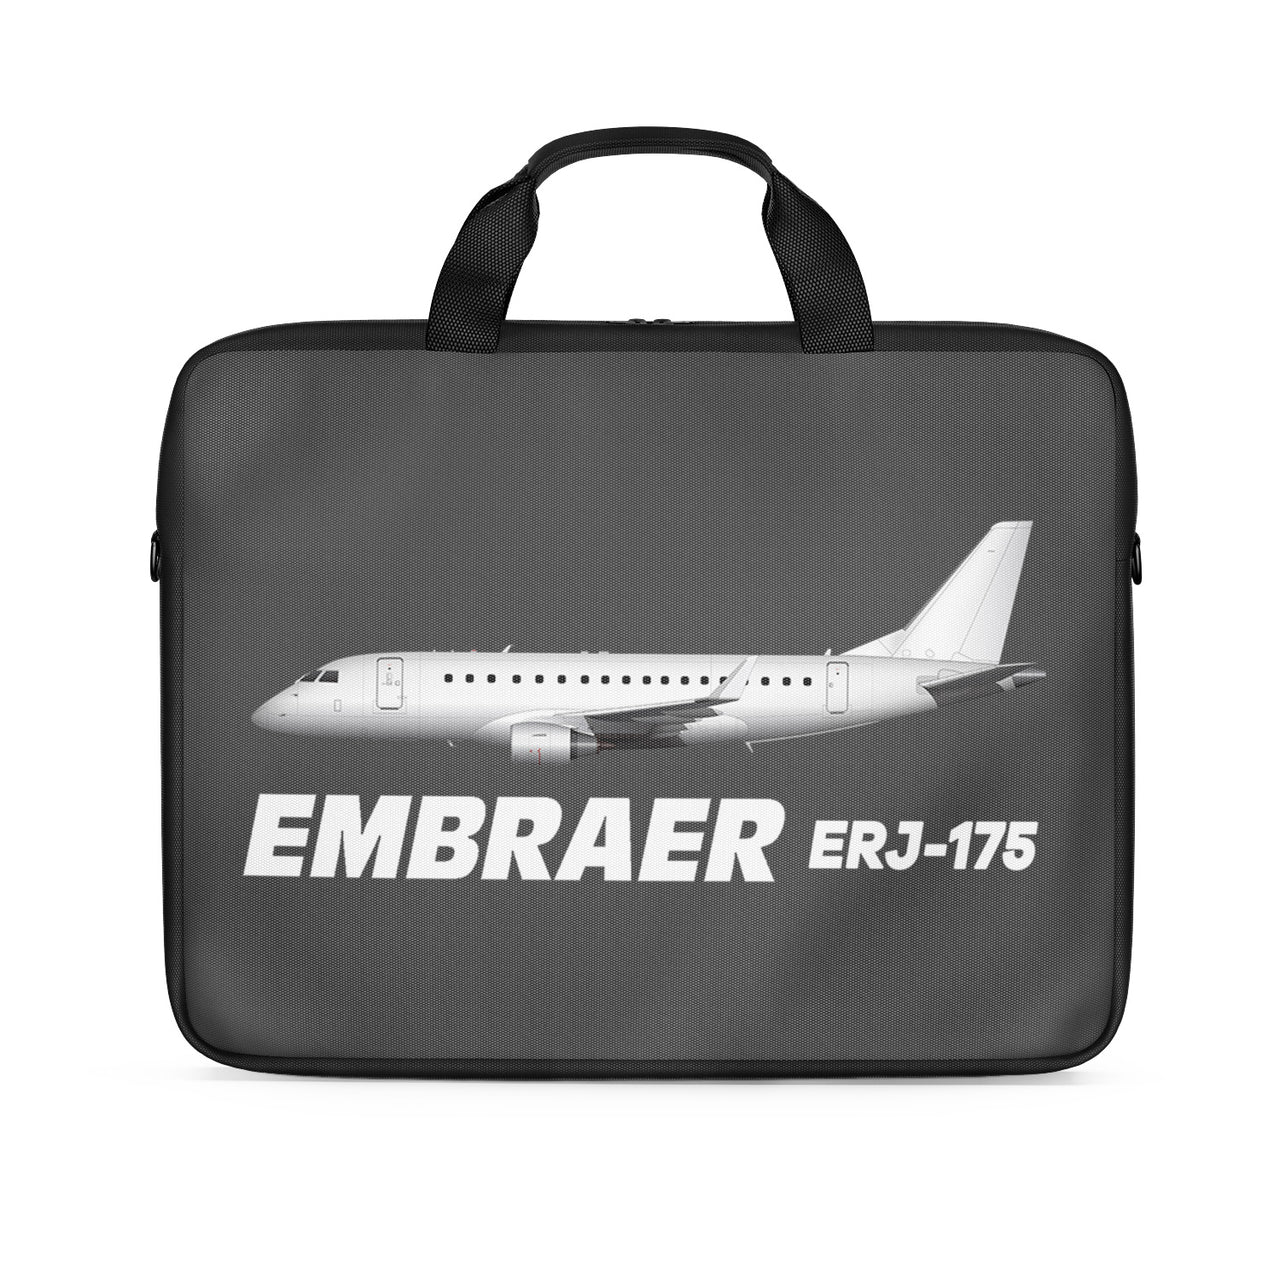 The Embraer ERJ-175 Designed Laptop & Tablet Bags